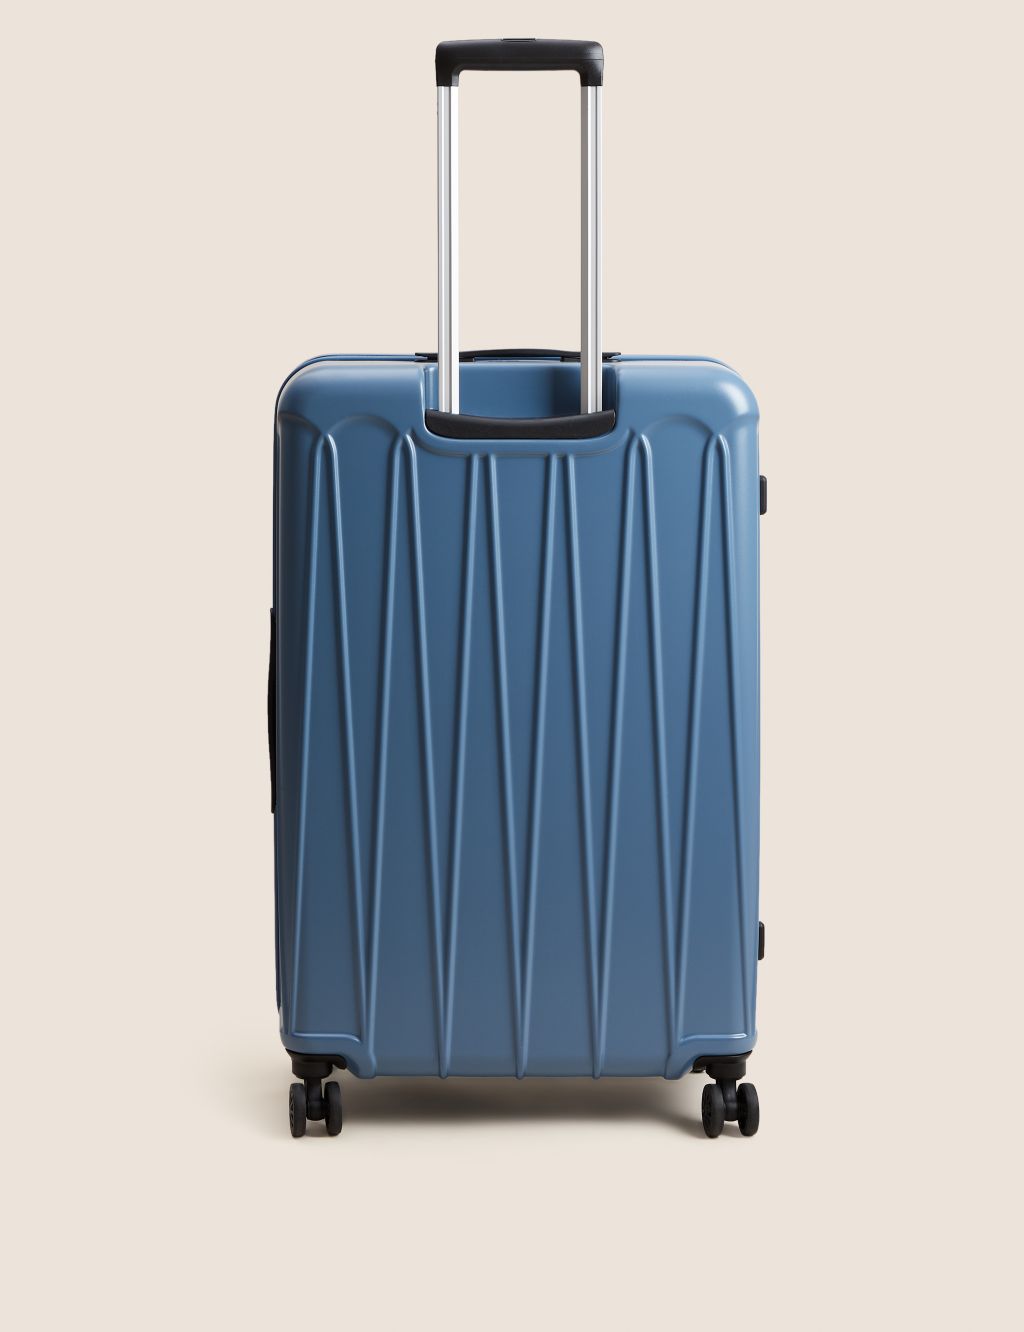 Amalfi 4 Wheel Hard Shell Large Suitcase image 2